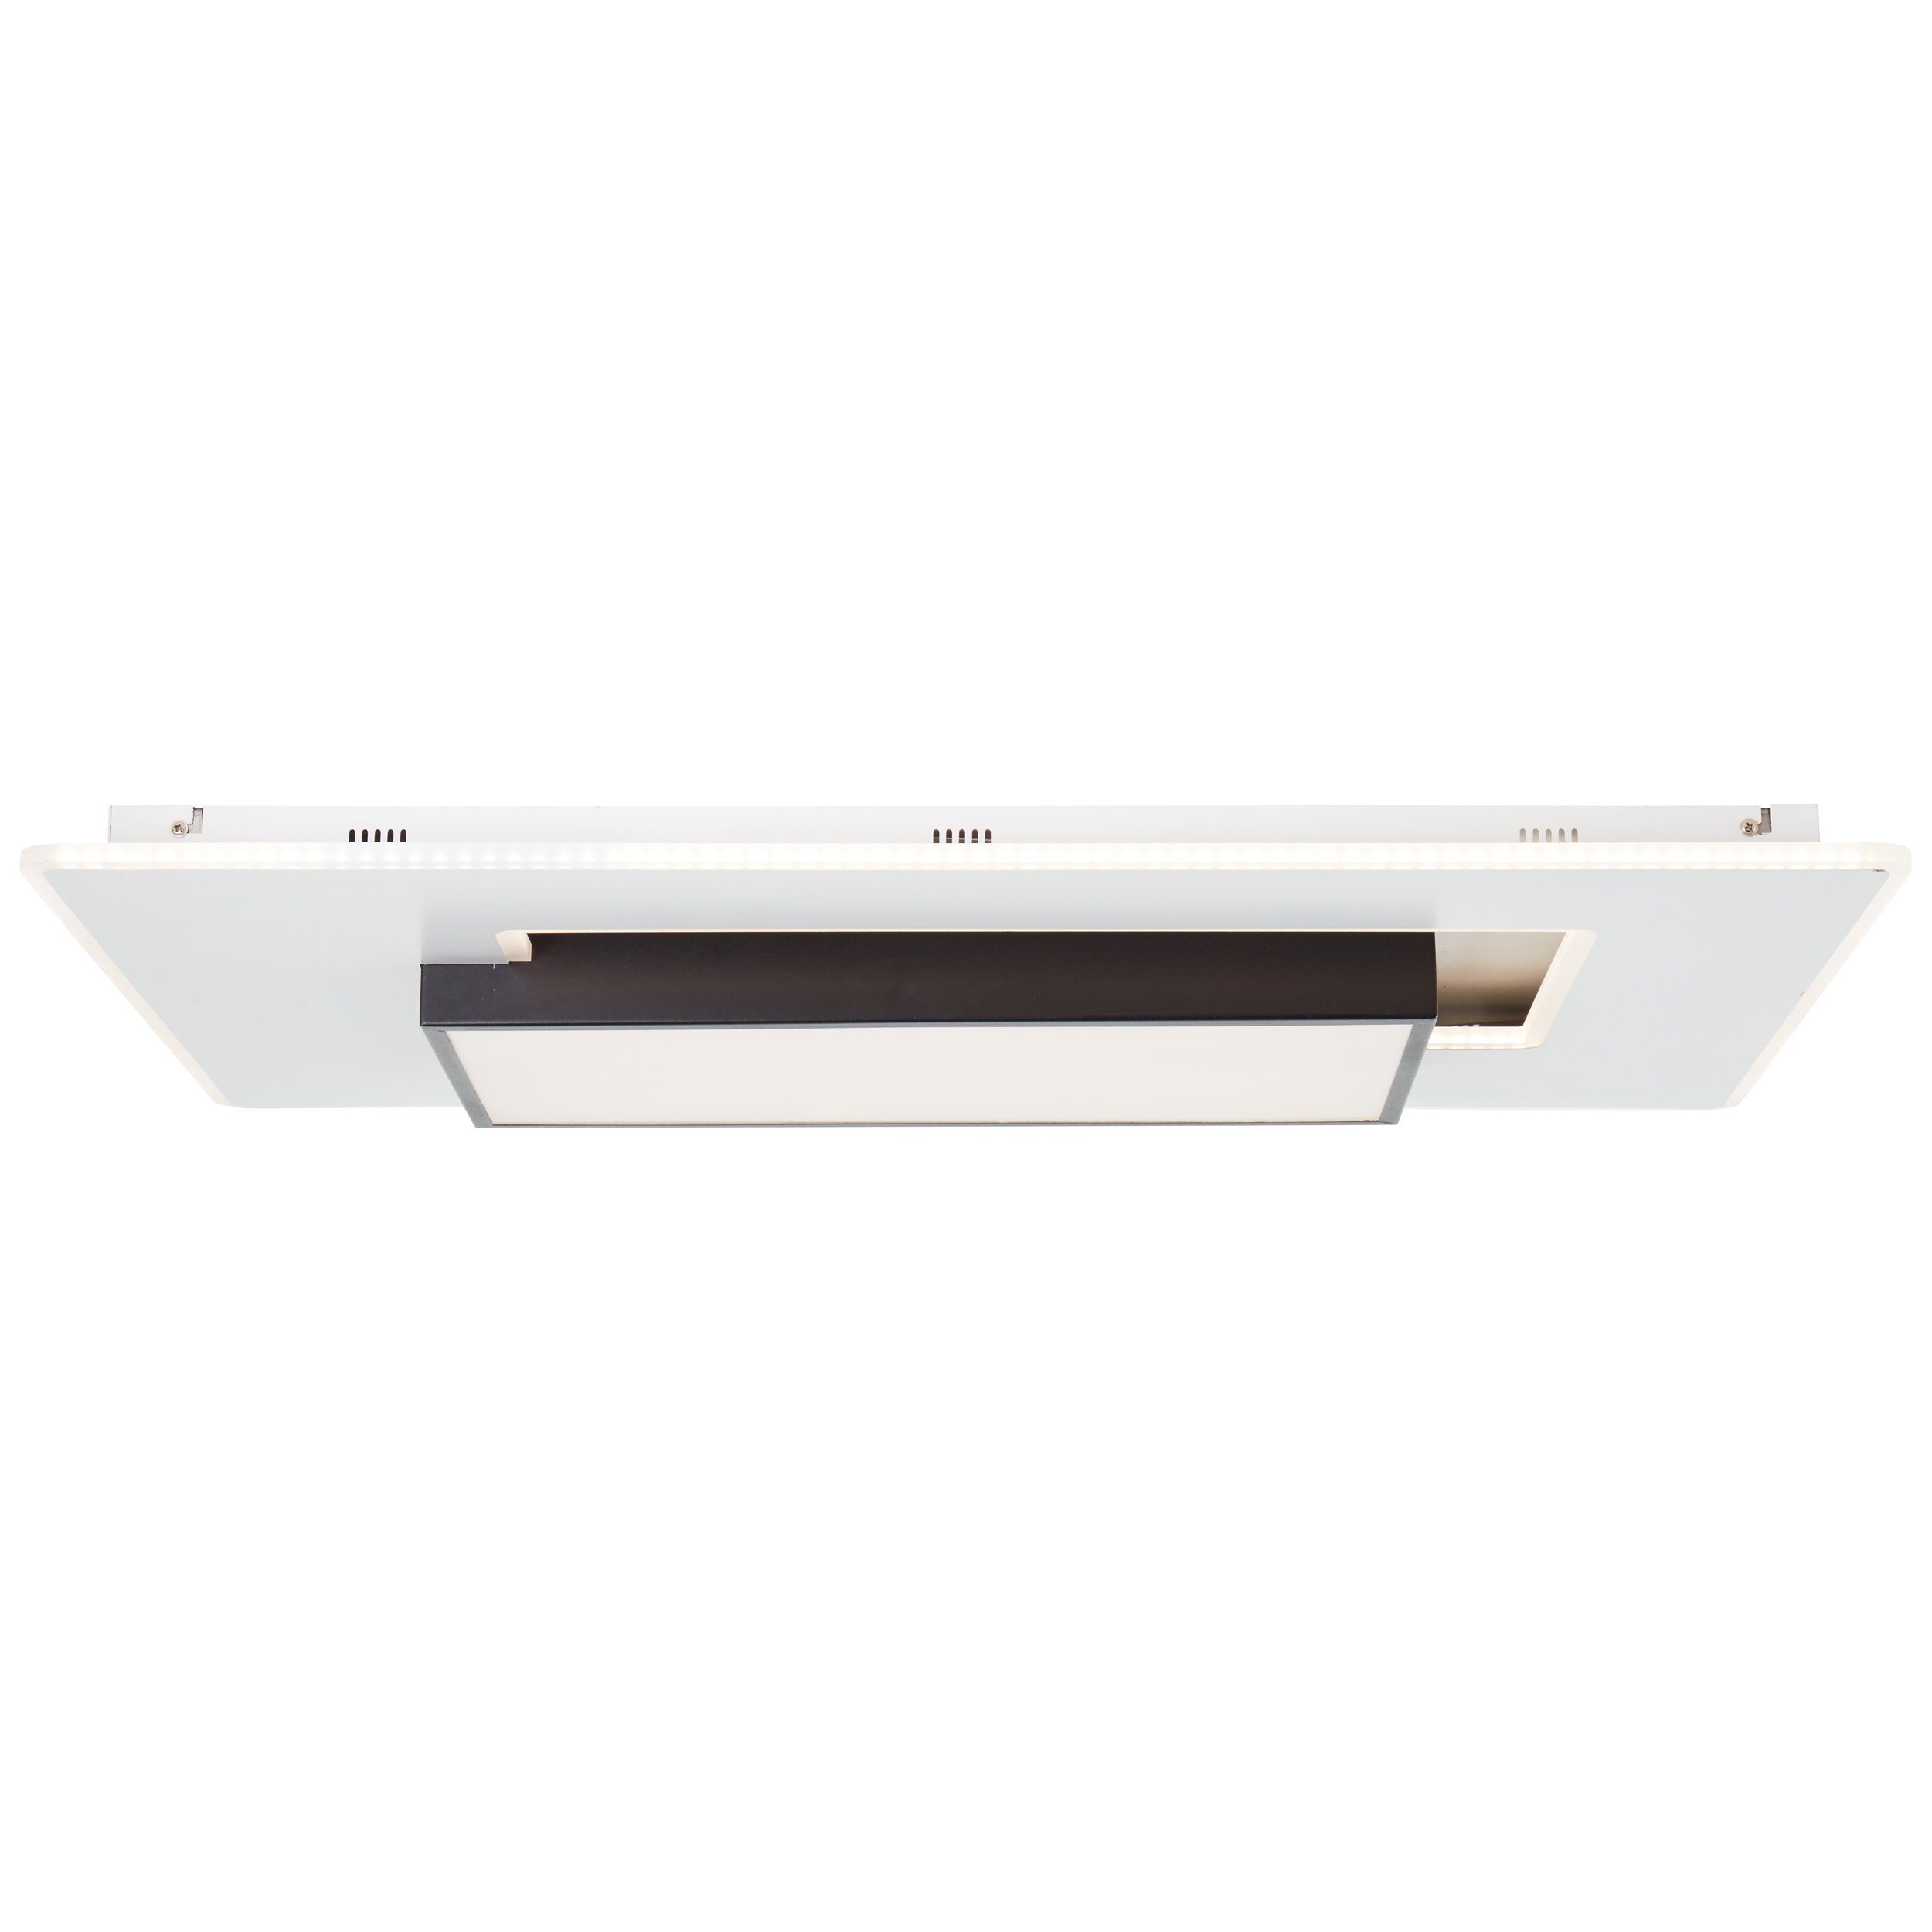 1x 80x50cm Brilliant Hutson, weiß/schwarz, Deckenleuchte LED Metall/Kunststoff, Deckenleuchte Hutson 6